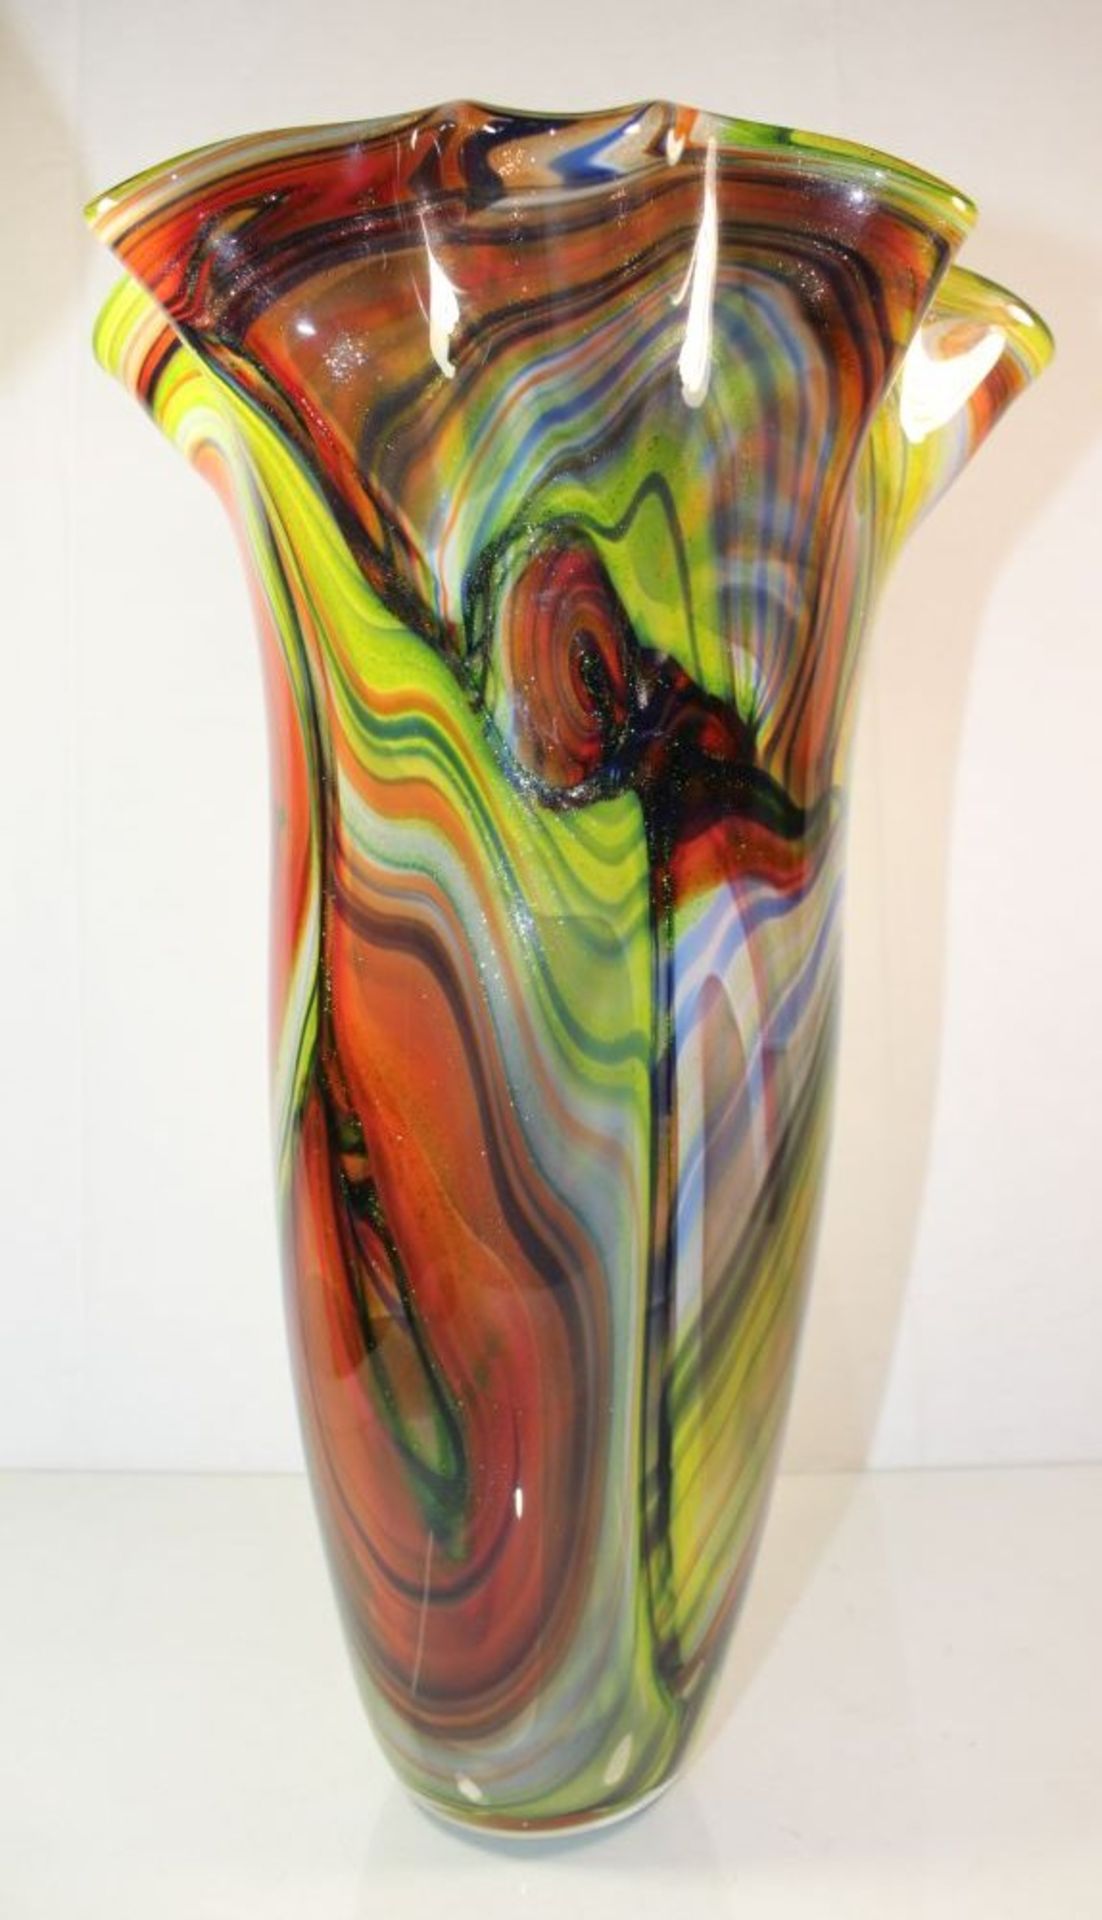 hohe Kunstglas-Vase, farbige Einschmelzungen, H-45cm.- - -22.61 % buyer's premium on the hammer - Bild 4 aus 7